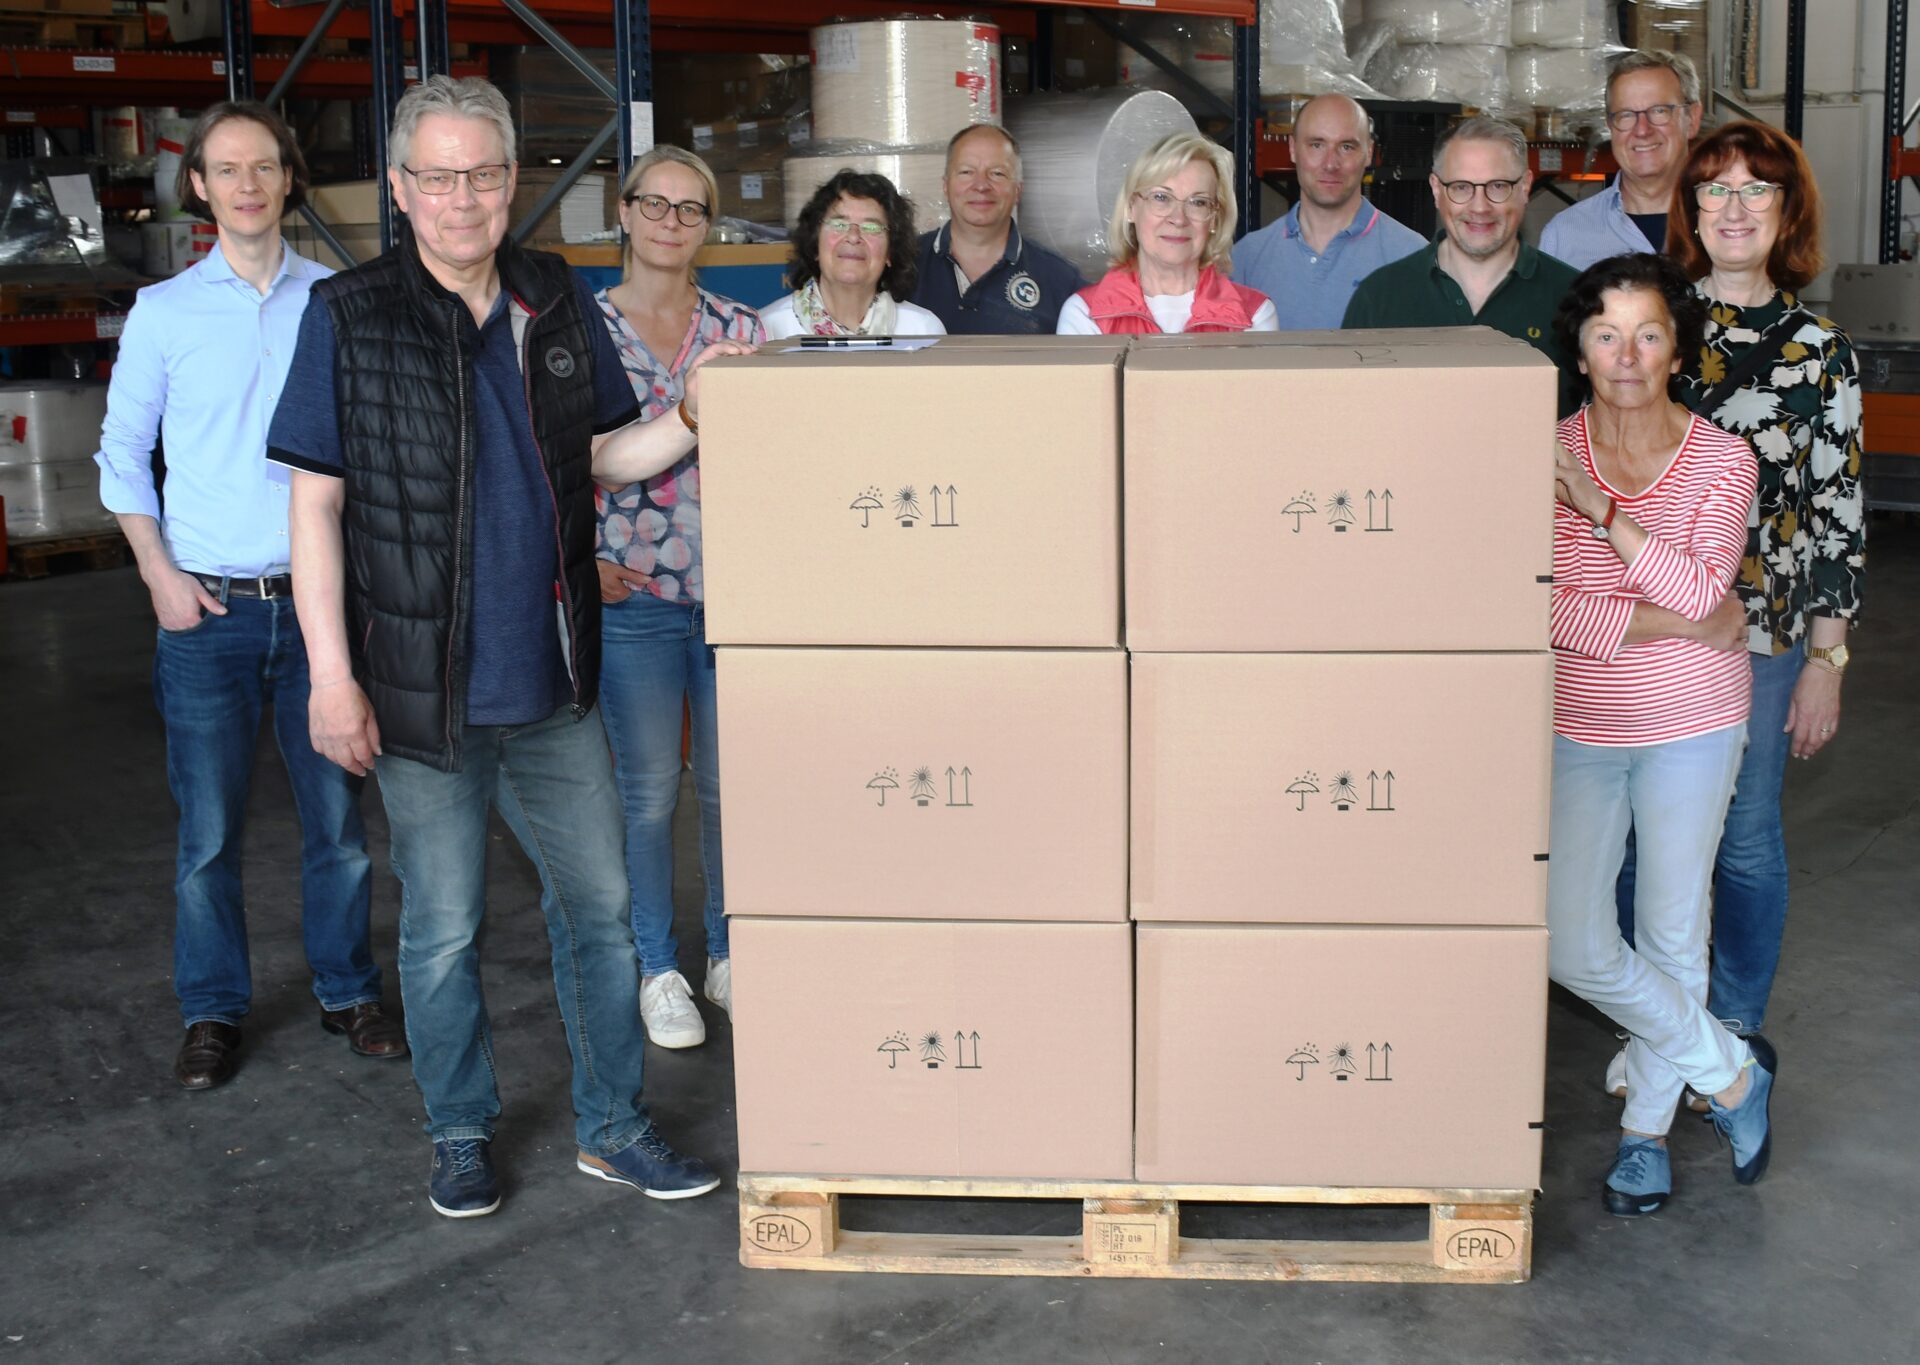 Lions Club Schwerte spendet 40 Hilfspakete – Erstausstattung für Ukraine Flüchtlinge